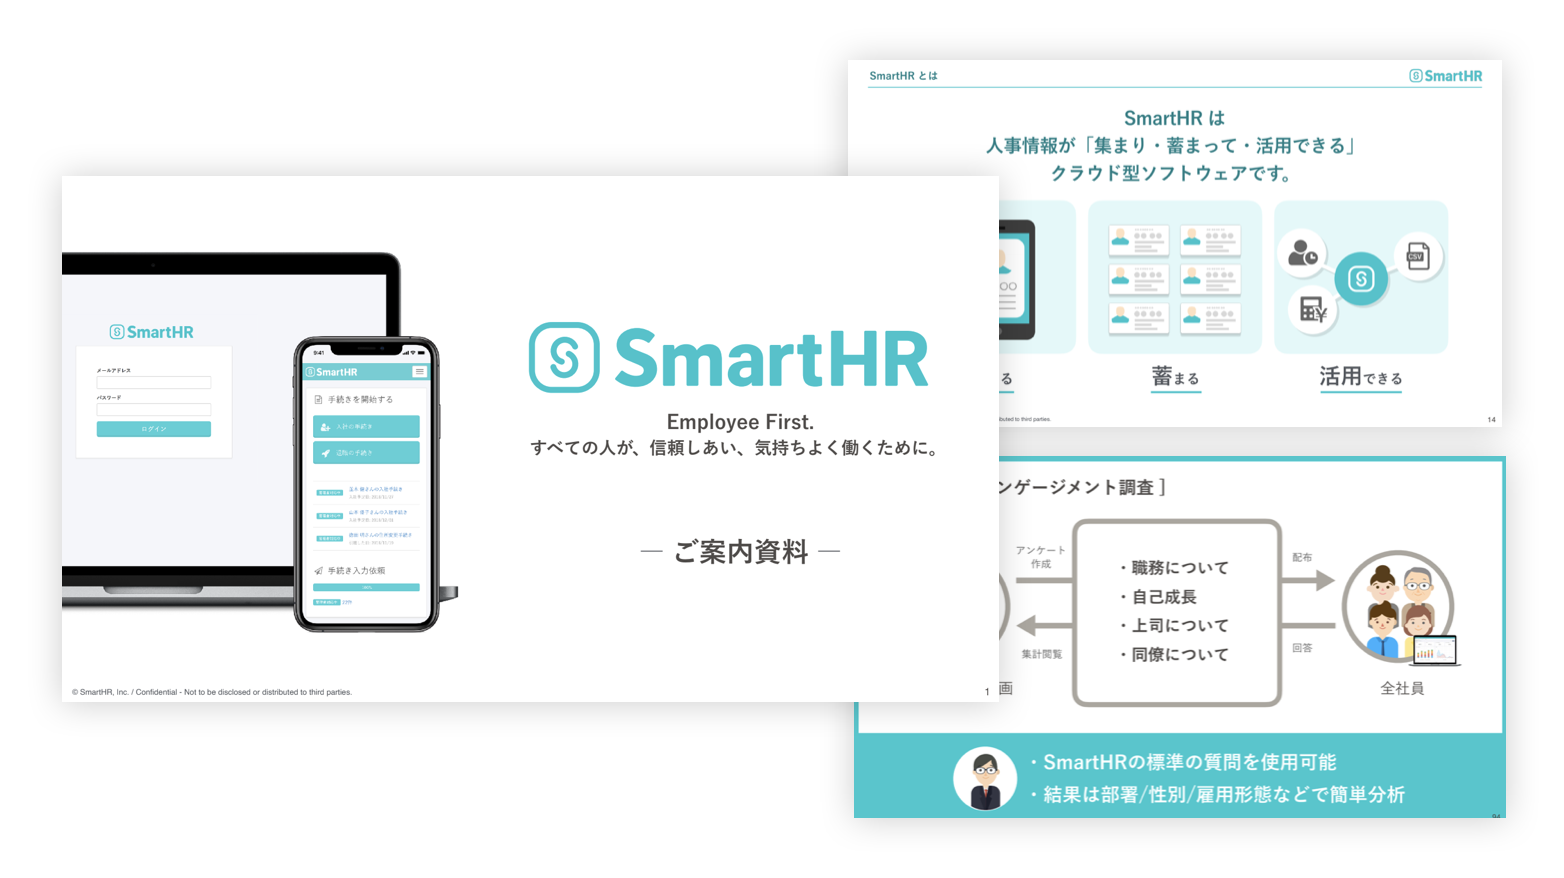 SmartHRの営業資料の画像が3枚並んでいる。左手に表紙が、右手に「SmartHRは人事情報が集まり・蓄まって・活用できるクラウド型ソフトウェアです」と「エンゲージメント調査について」の2枚が並んでいる。